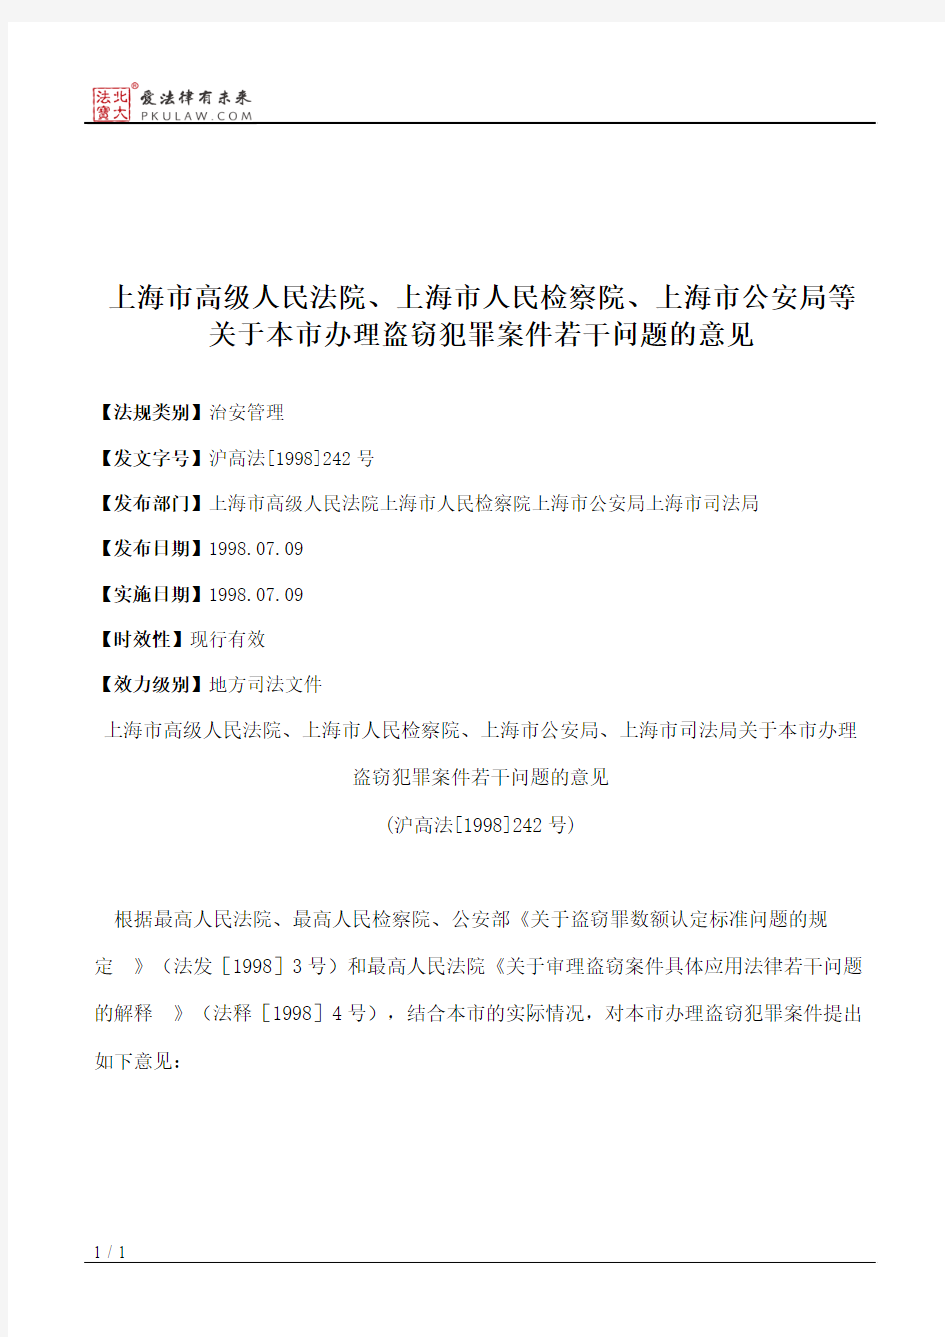 上海市高级人民法院、上海市人民检察院、上海市公安局等关于本市